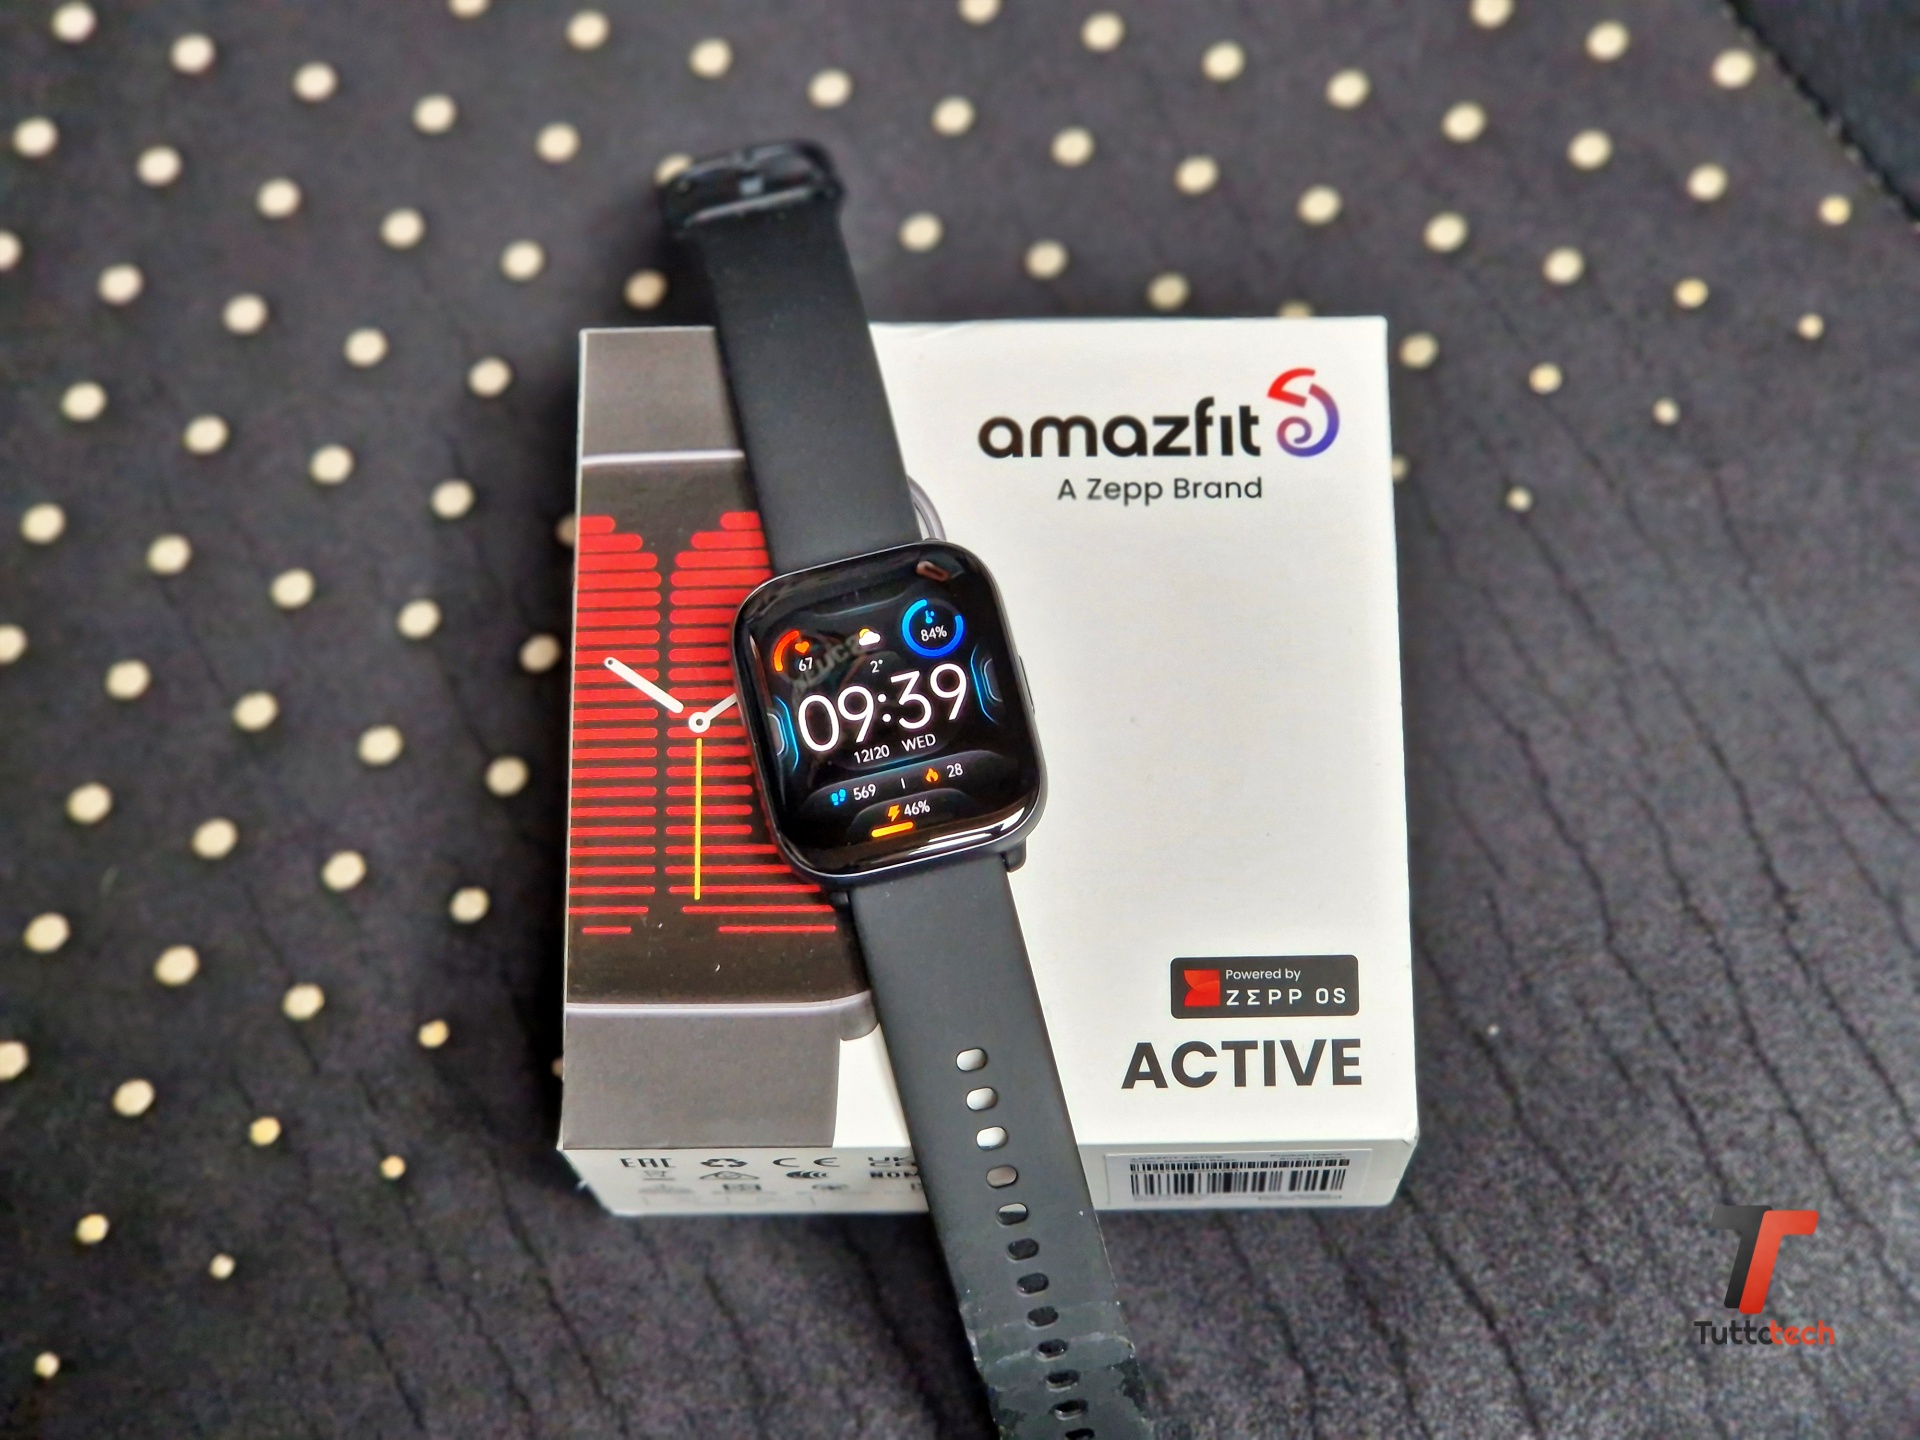 Amazfit regala 30 euro di watch face a chi acquista Active e lancia un concorso